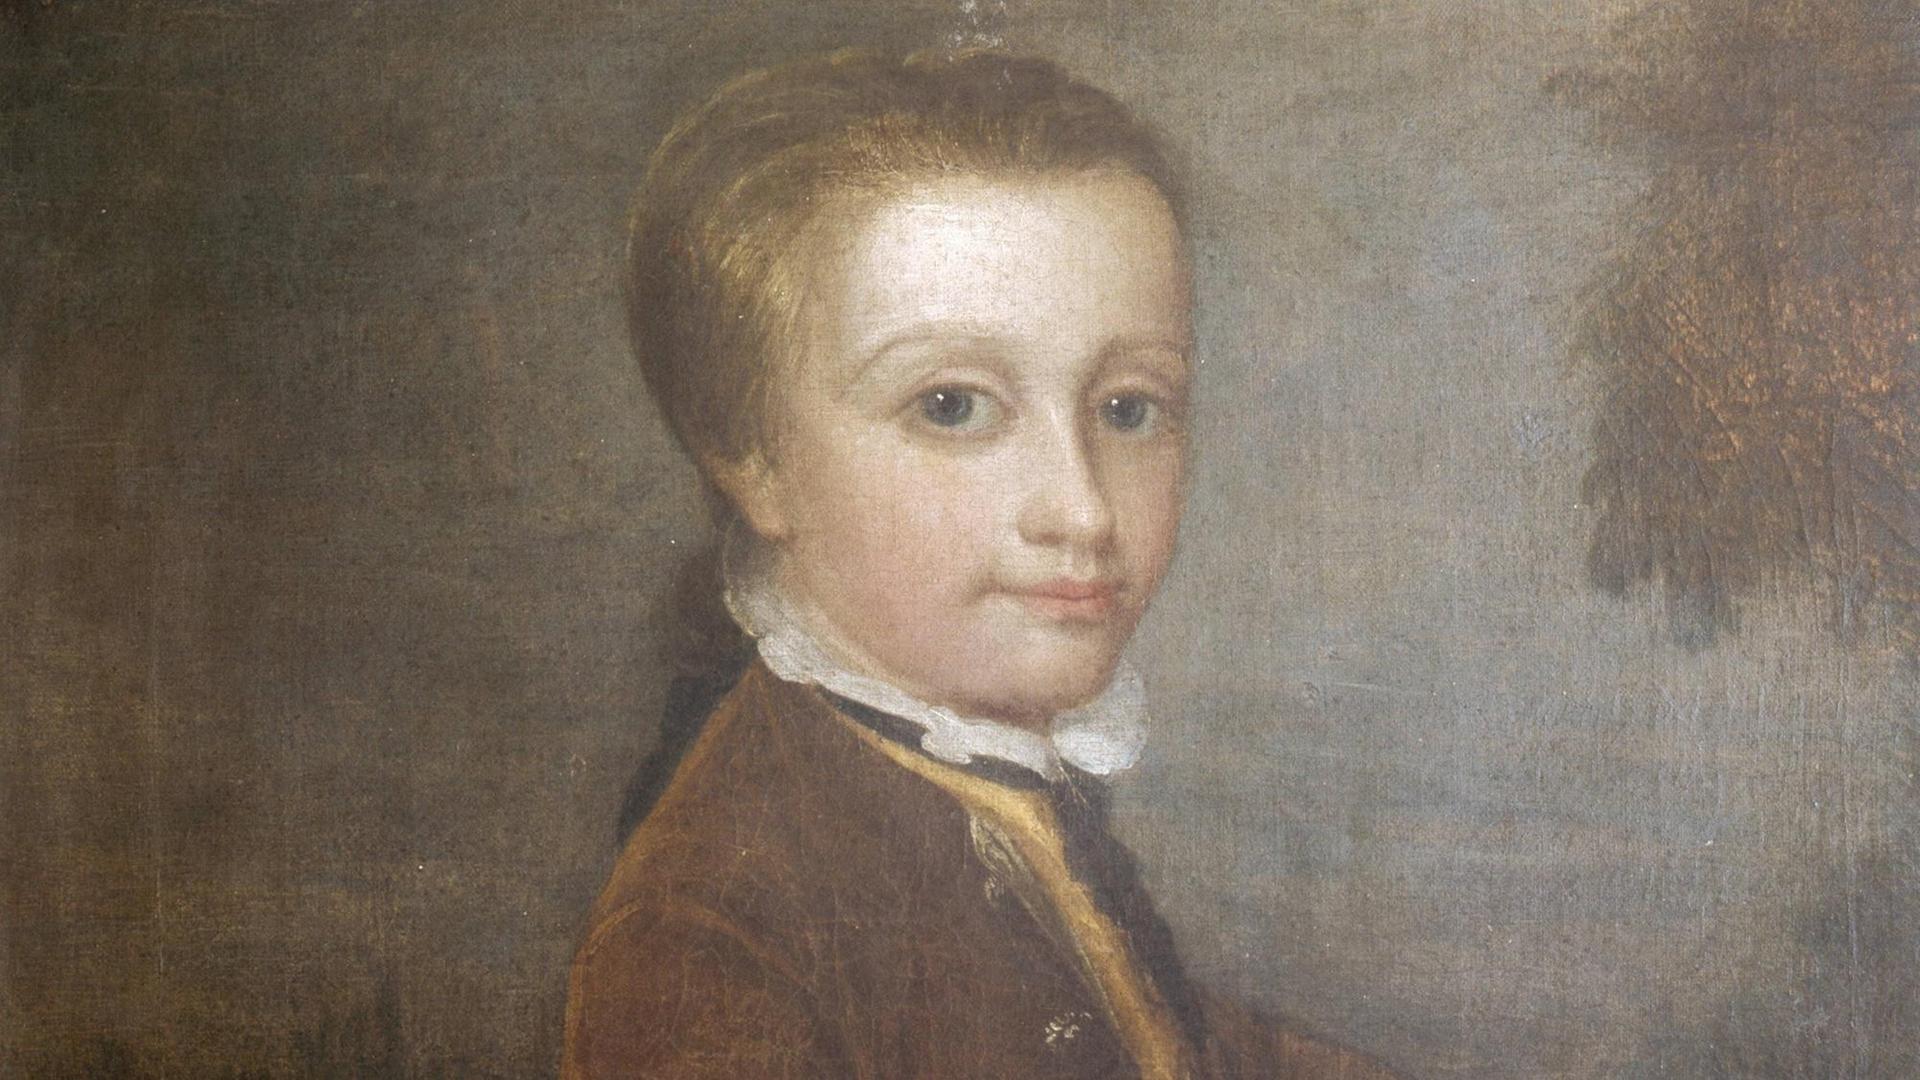 Ein Porträt von Mozart als Kind mit einem Vogelnest.